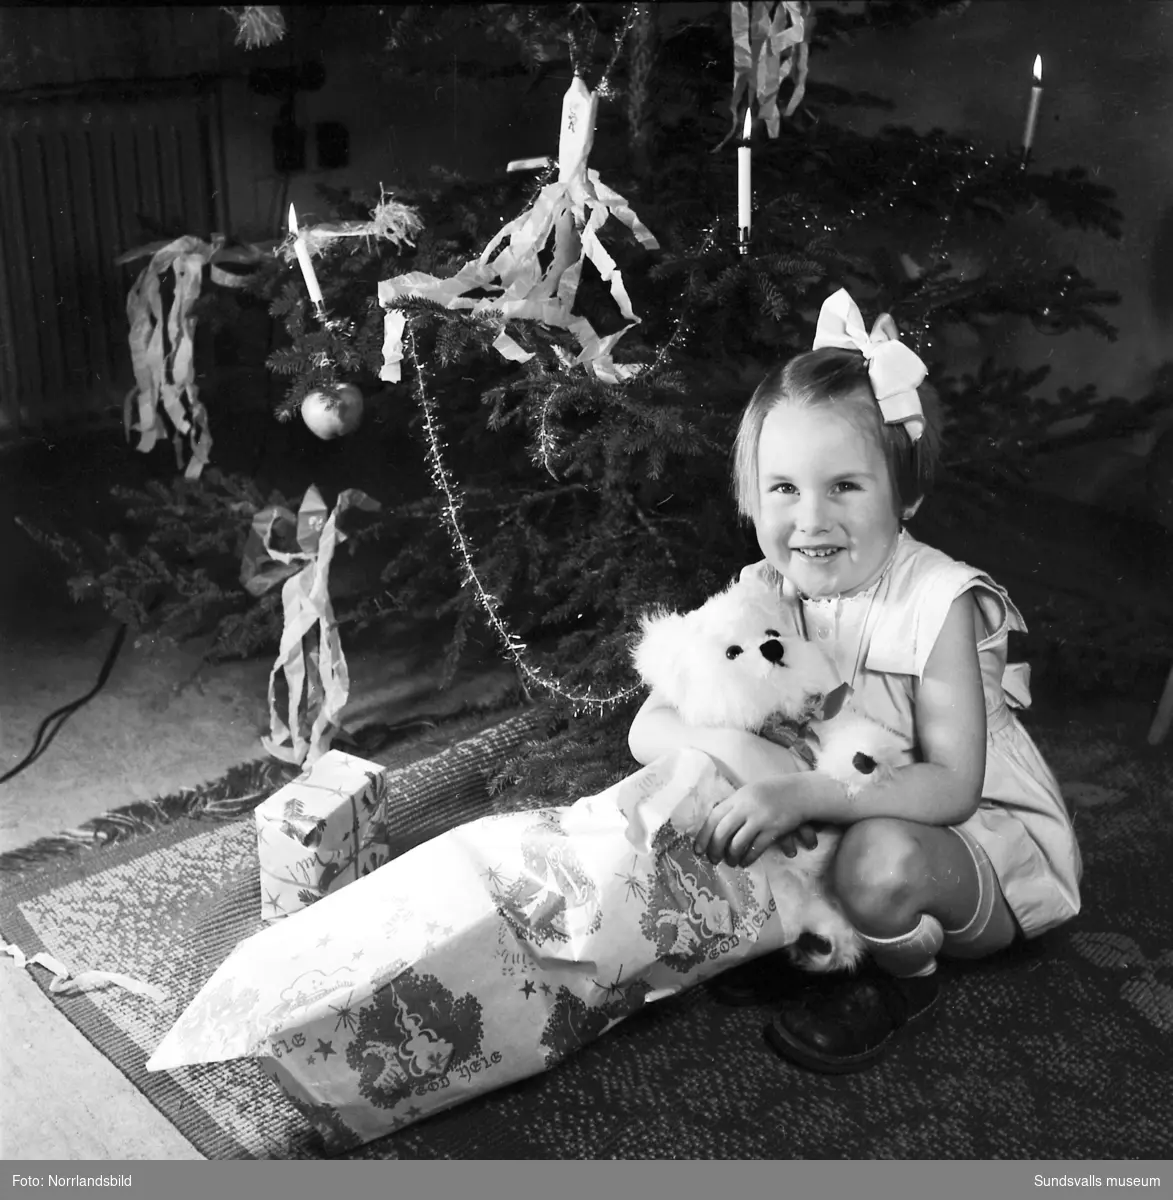 En liten flicka, Lena Tranberg, sitter framför julgranen med en nyöppnad present - en leksakshund.